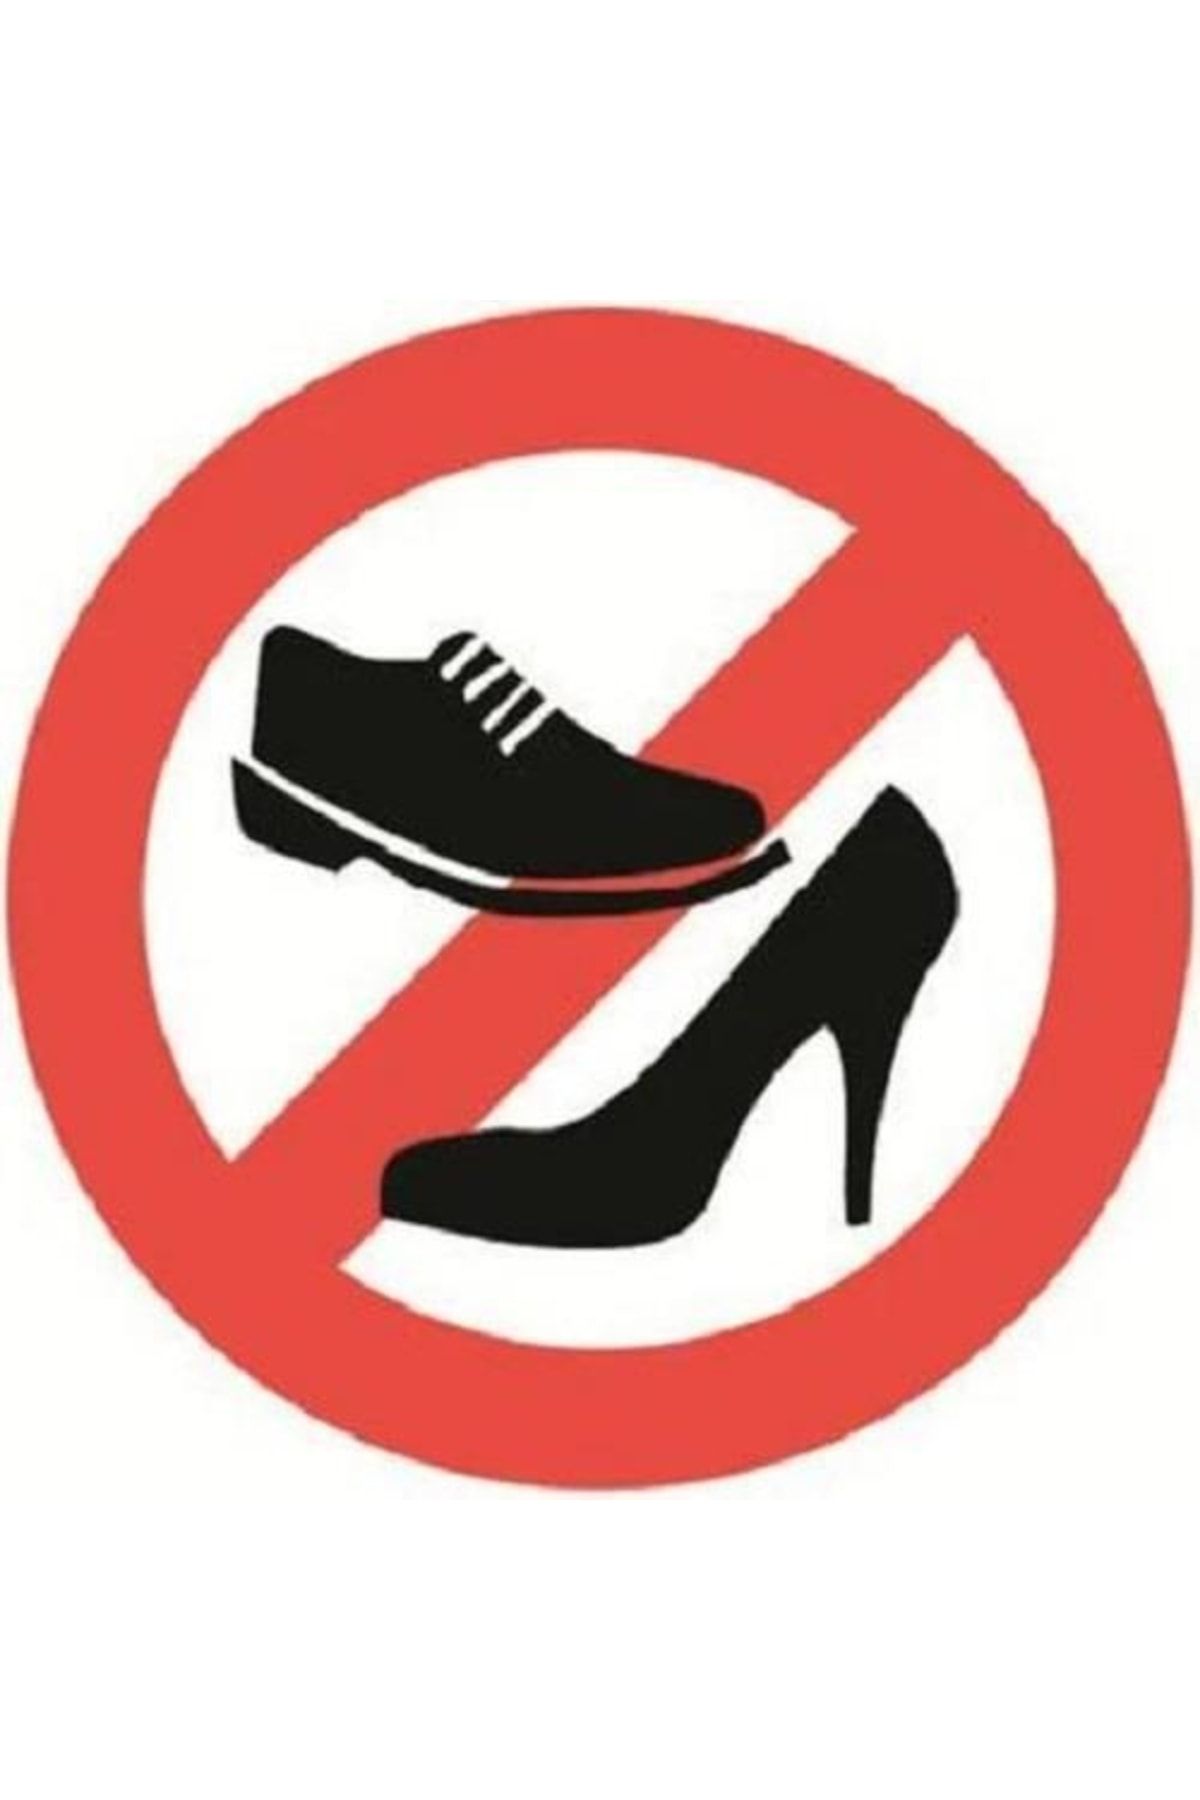 Надеть сменную обувь. В обуви запрещено. Знак без обуви. Знак в обуви запрещено. Вход в обуви запрещен.